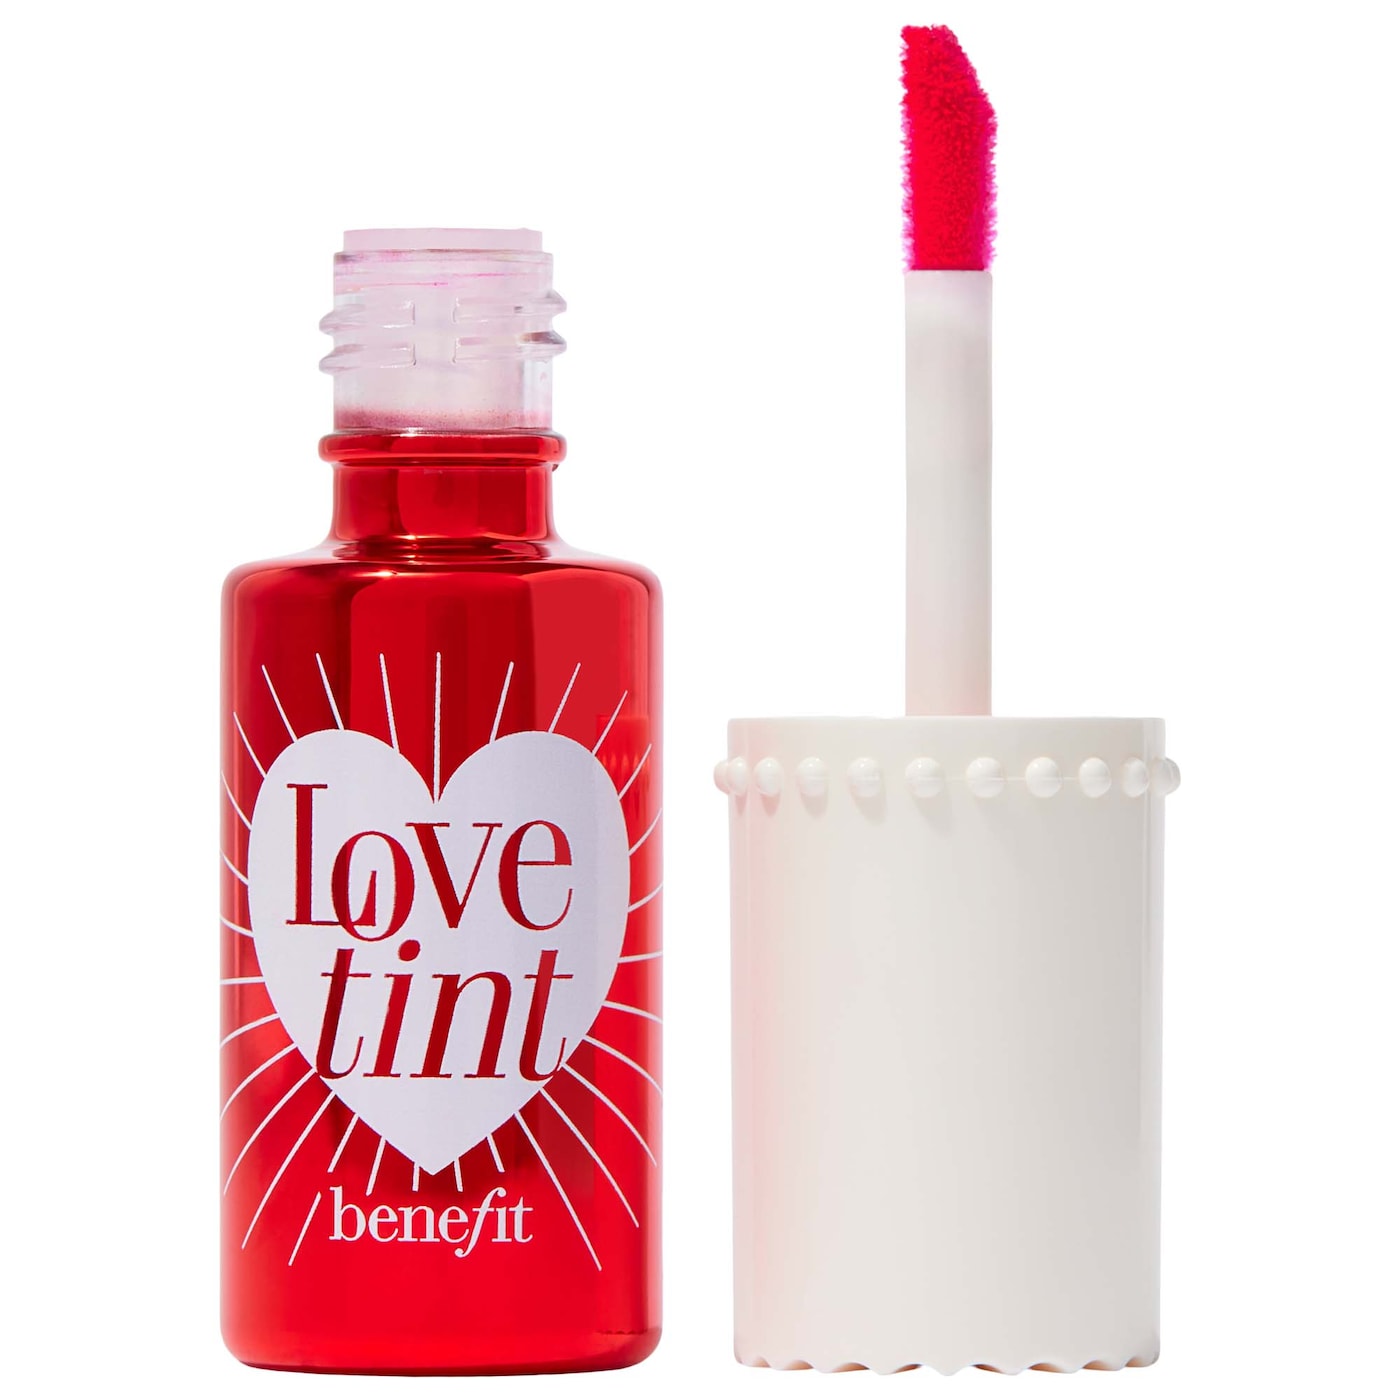 BENEFIT - Love tint Liquid Lip Blush & Cheek Tint